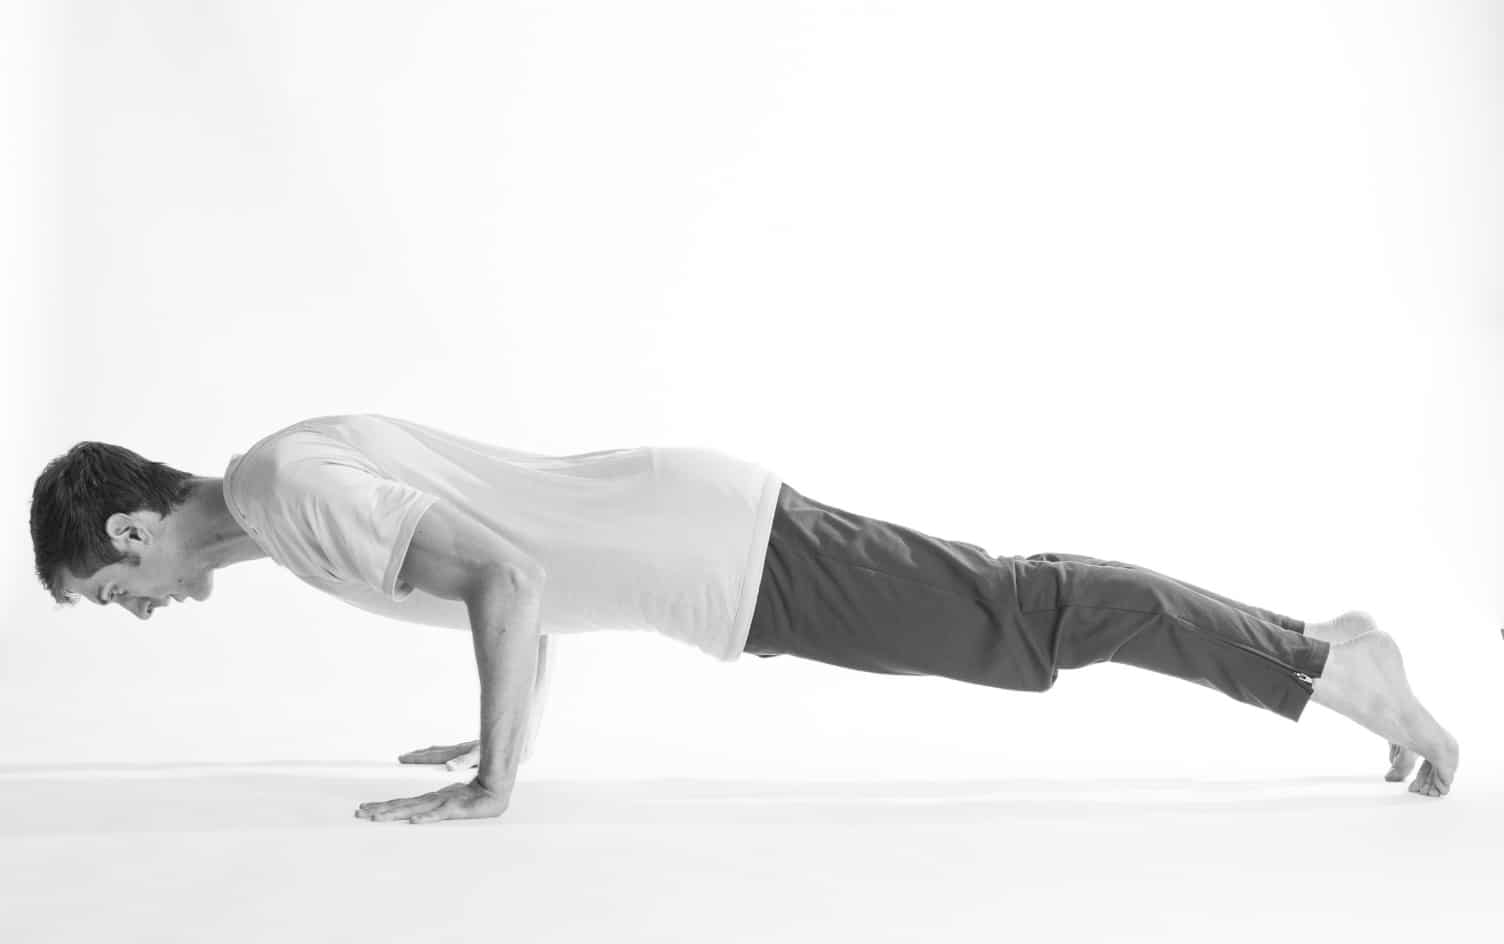 Yoga for Men: 11 Beginner-Friendly Yoga Poses for Men - Jen Reviews